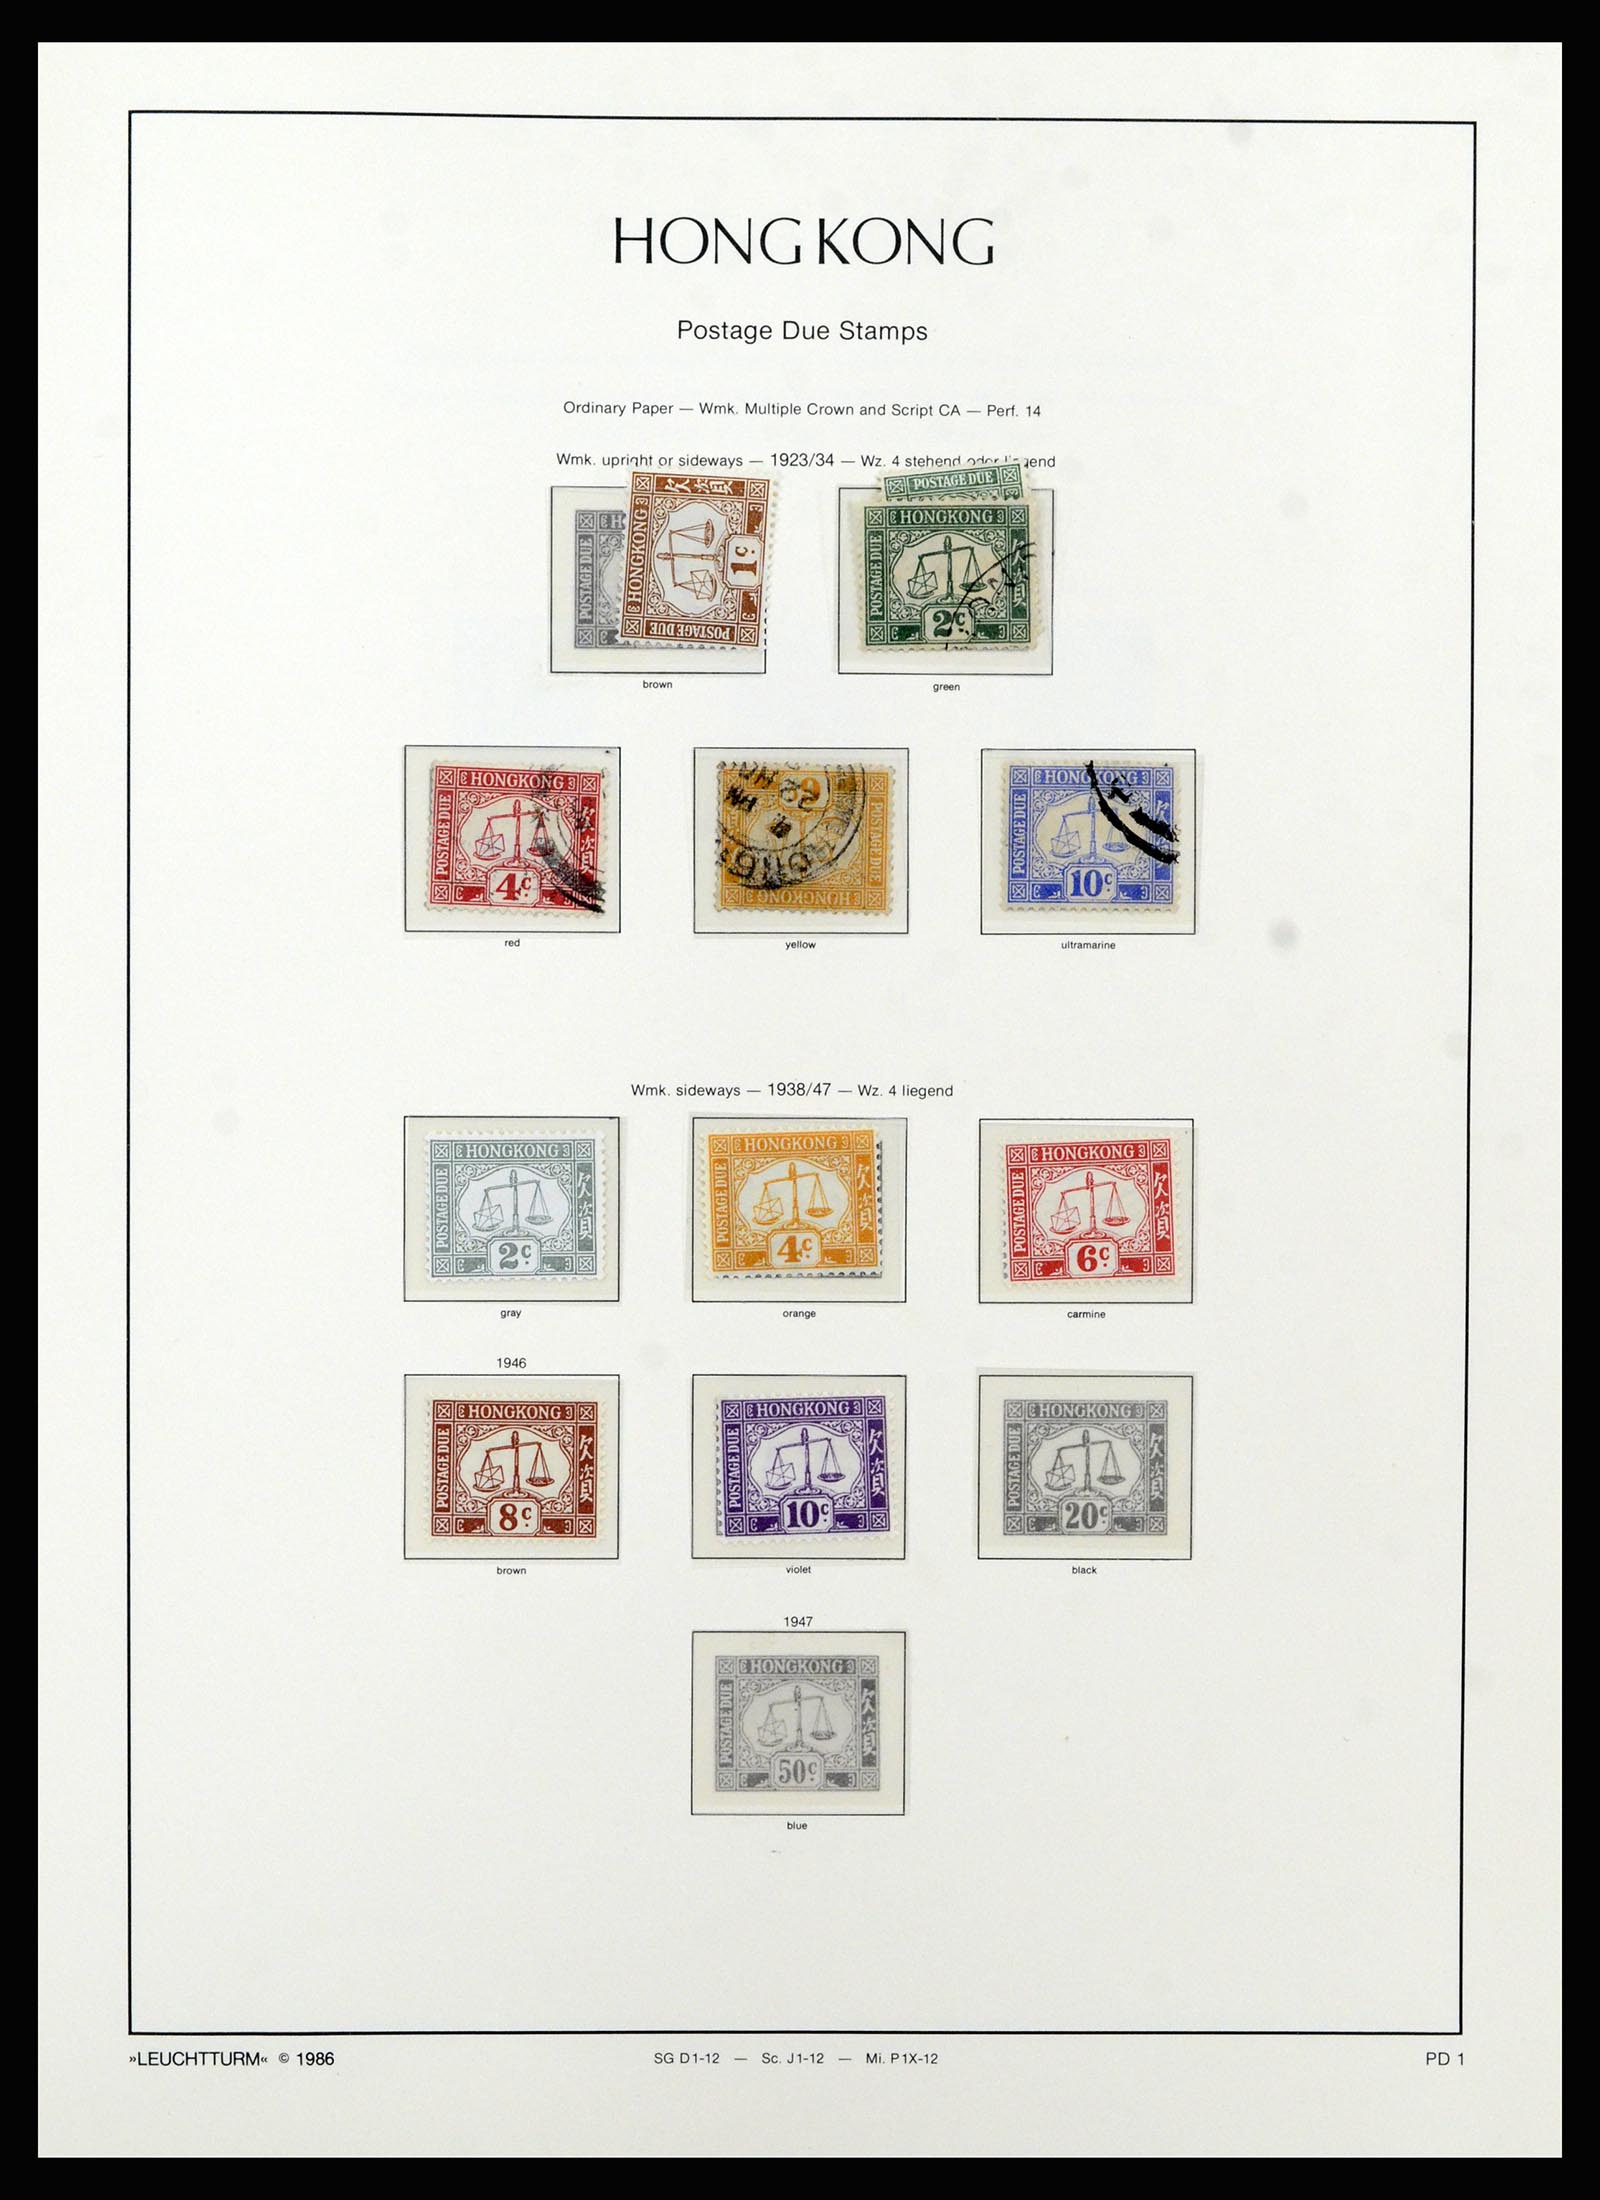 37070 014 - Stamp collection 37070 Hong Kong 1862-1996.